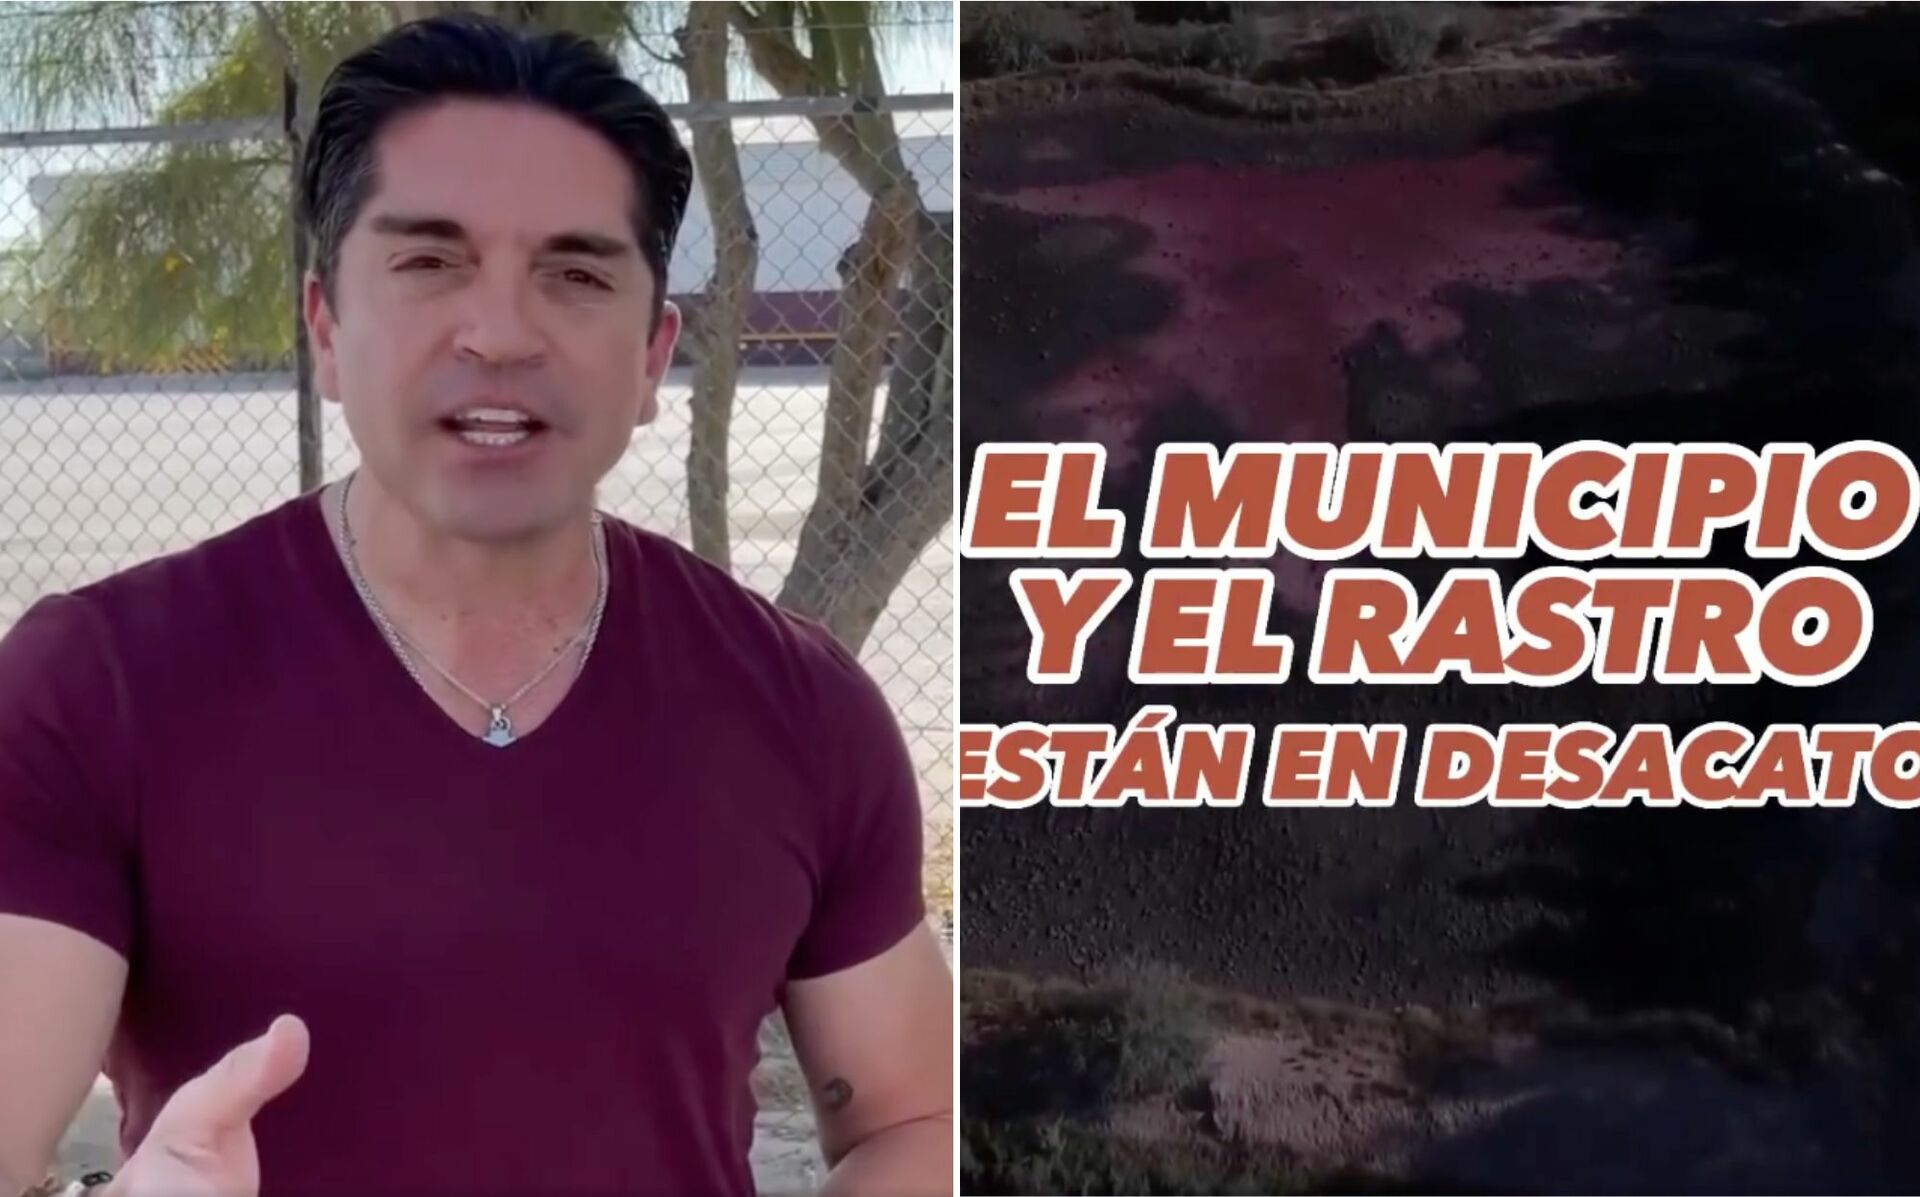 Luis Fernando Salazar denunció que el rastro de Torreón opera en desacato y sin cumplir las normas, advirtiendo que tal situación daña permanentemente la flora y fauna del municipio, además de poner en riesgo a la salud de los laguneros. (ESPECIAL)